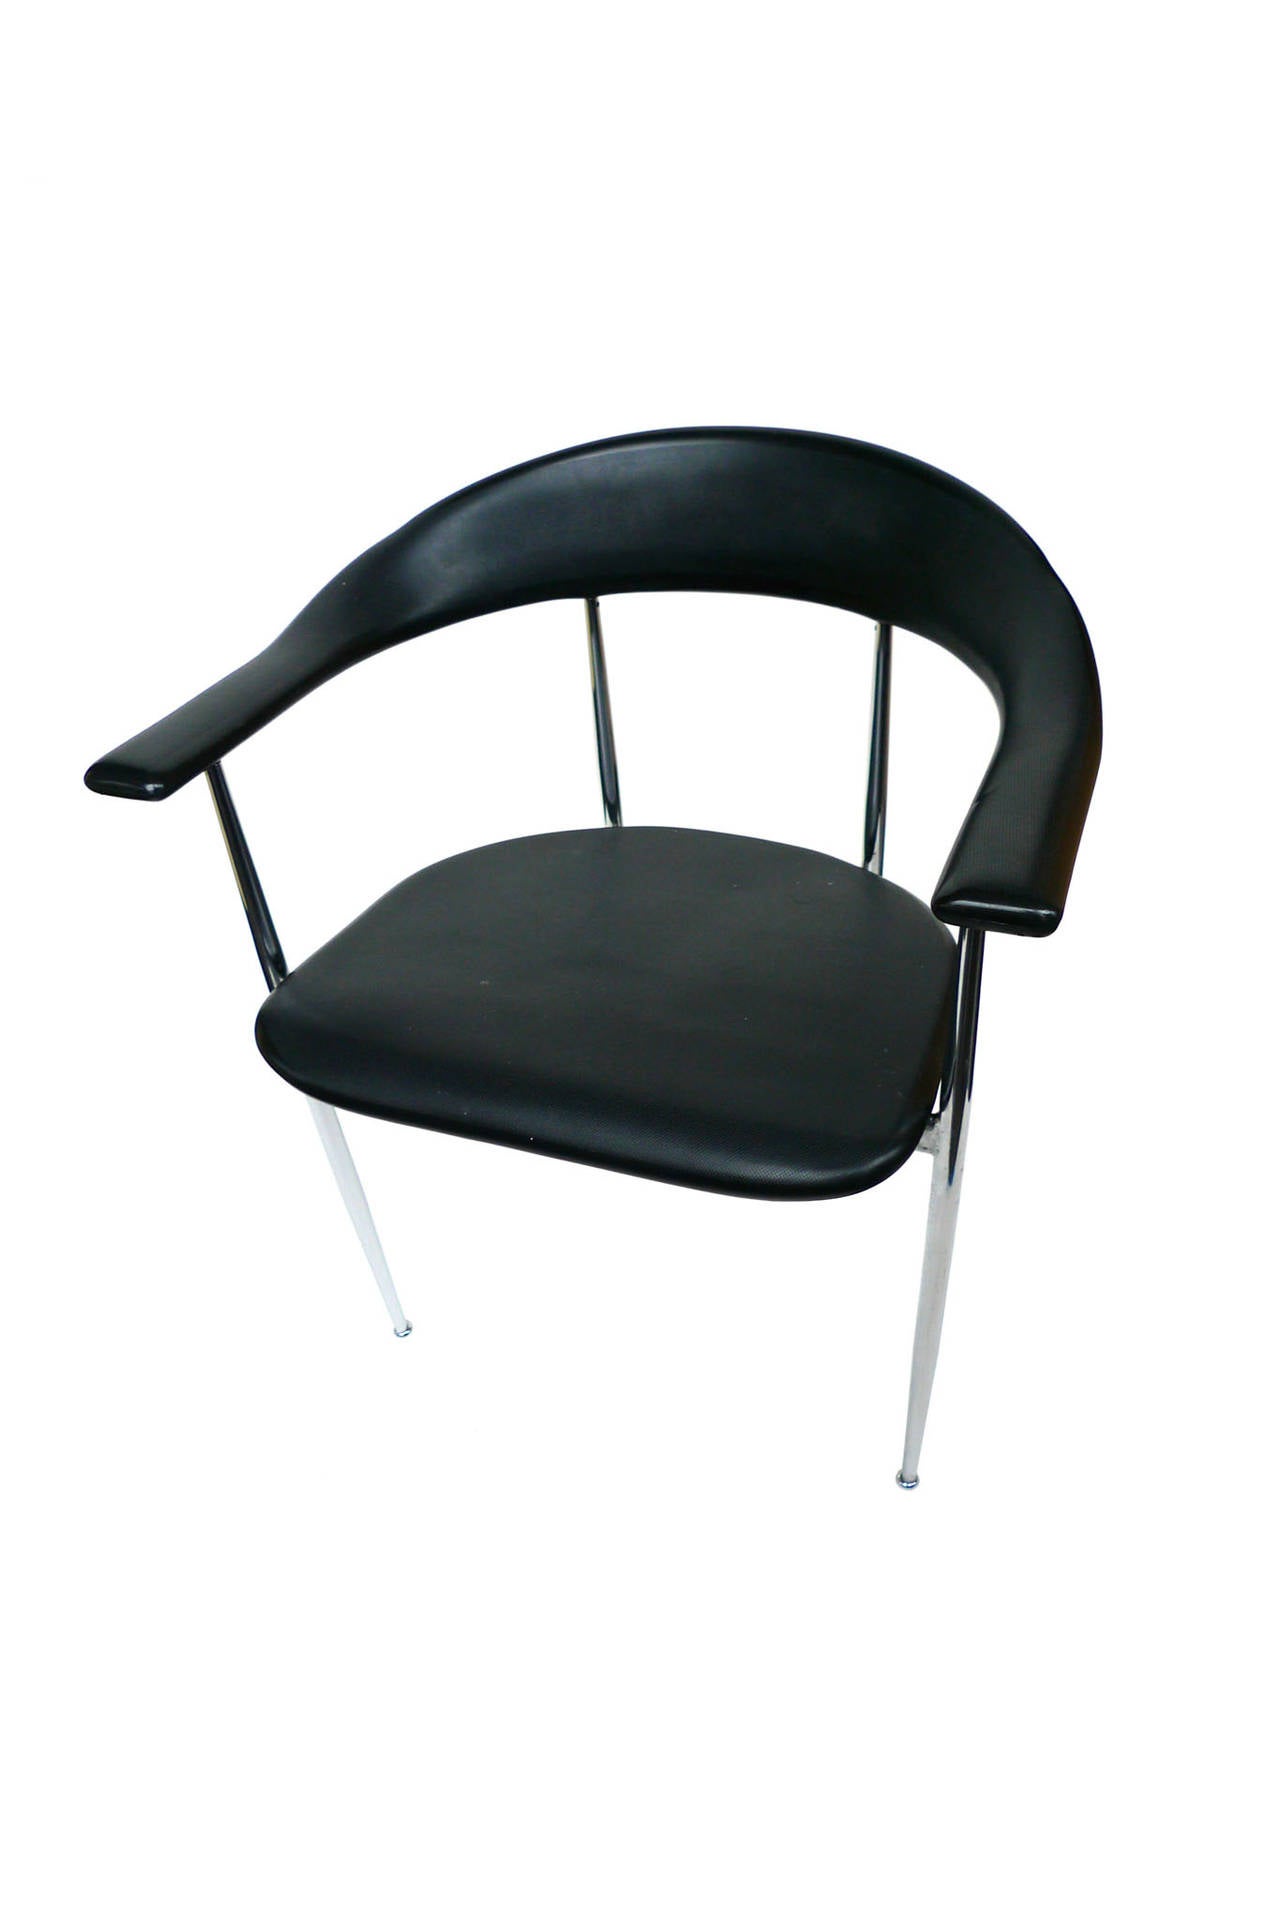 Diese 6 minimalistischen Fasem-Esszimmerstühle sind bequem und robust. Die Rückenlehne und der Sitz sind aus schwarzem Gummi geformt, während das Gestell und die Beine aus Chrom sind. Ihr Design zeichnet sich durch die abgerundeten Kanten aus, die